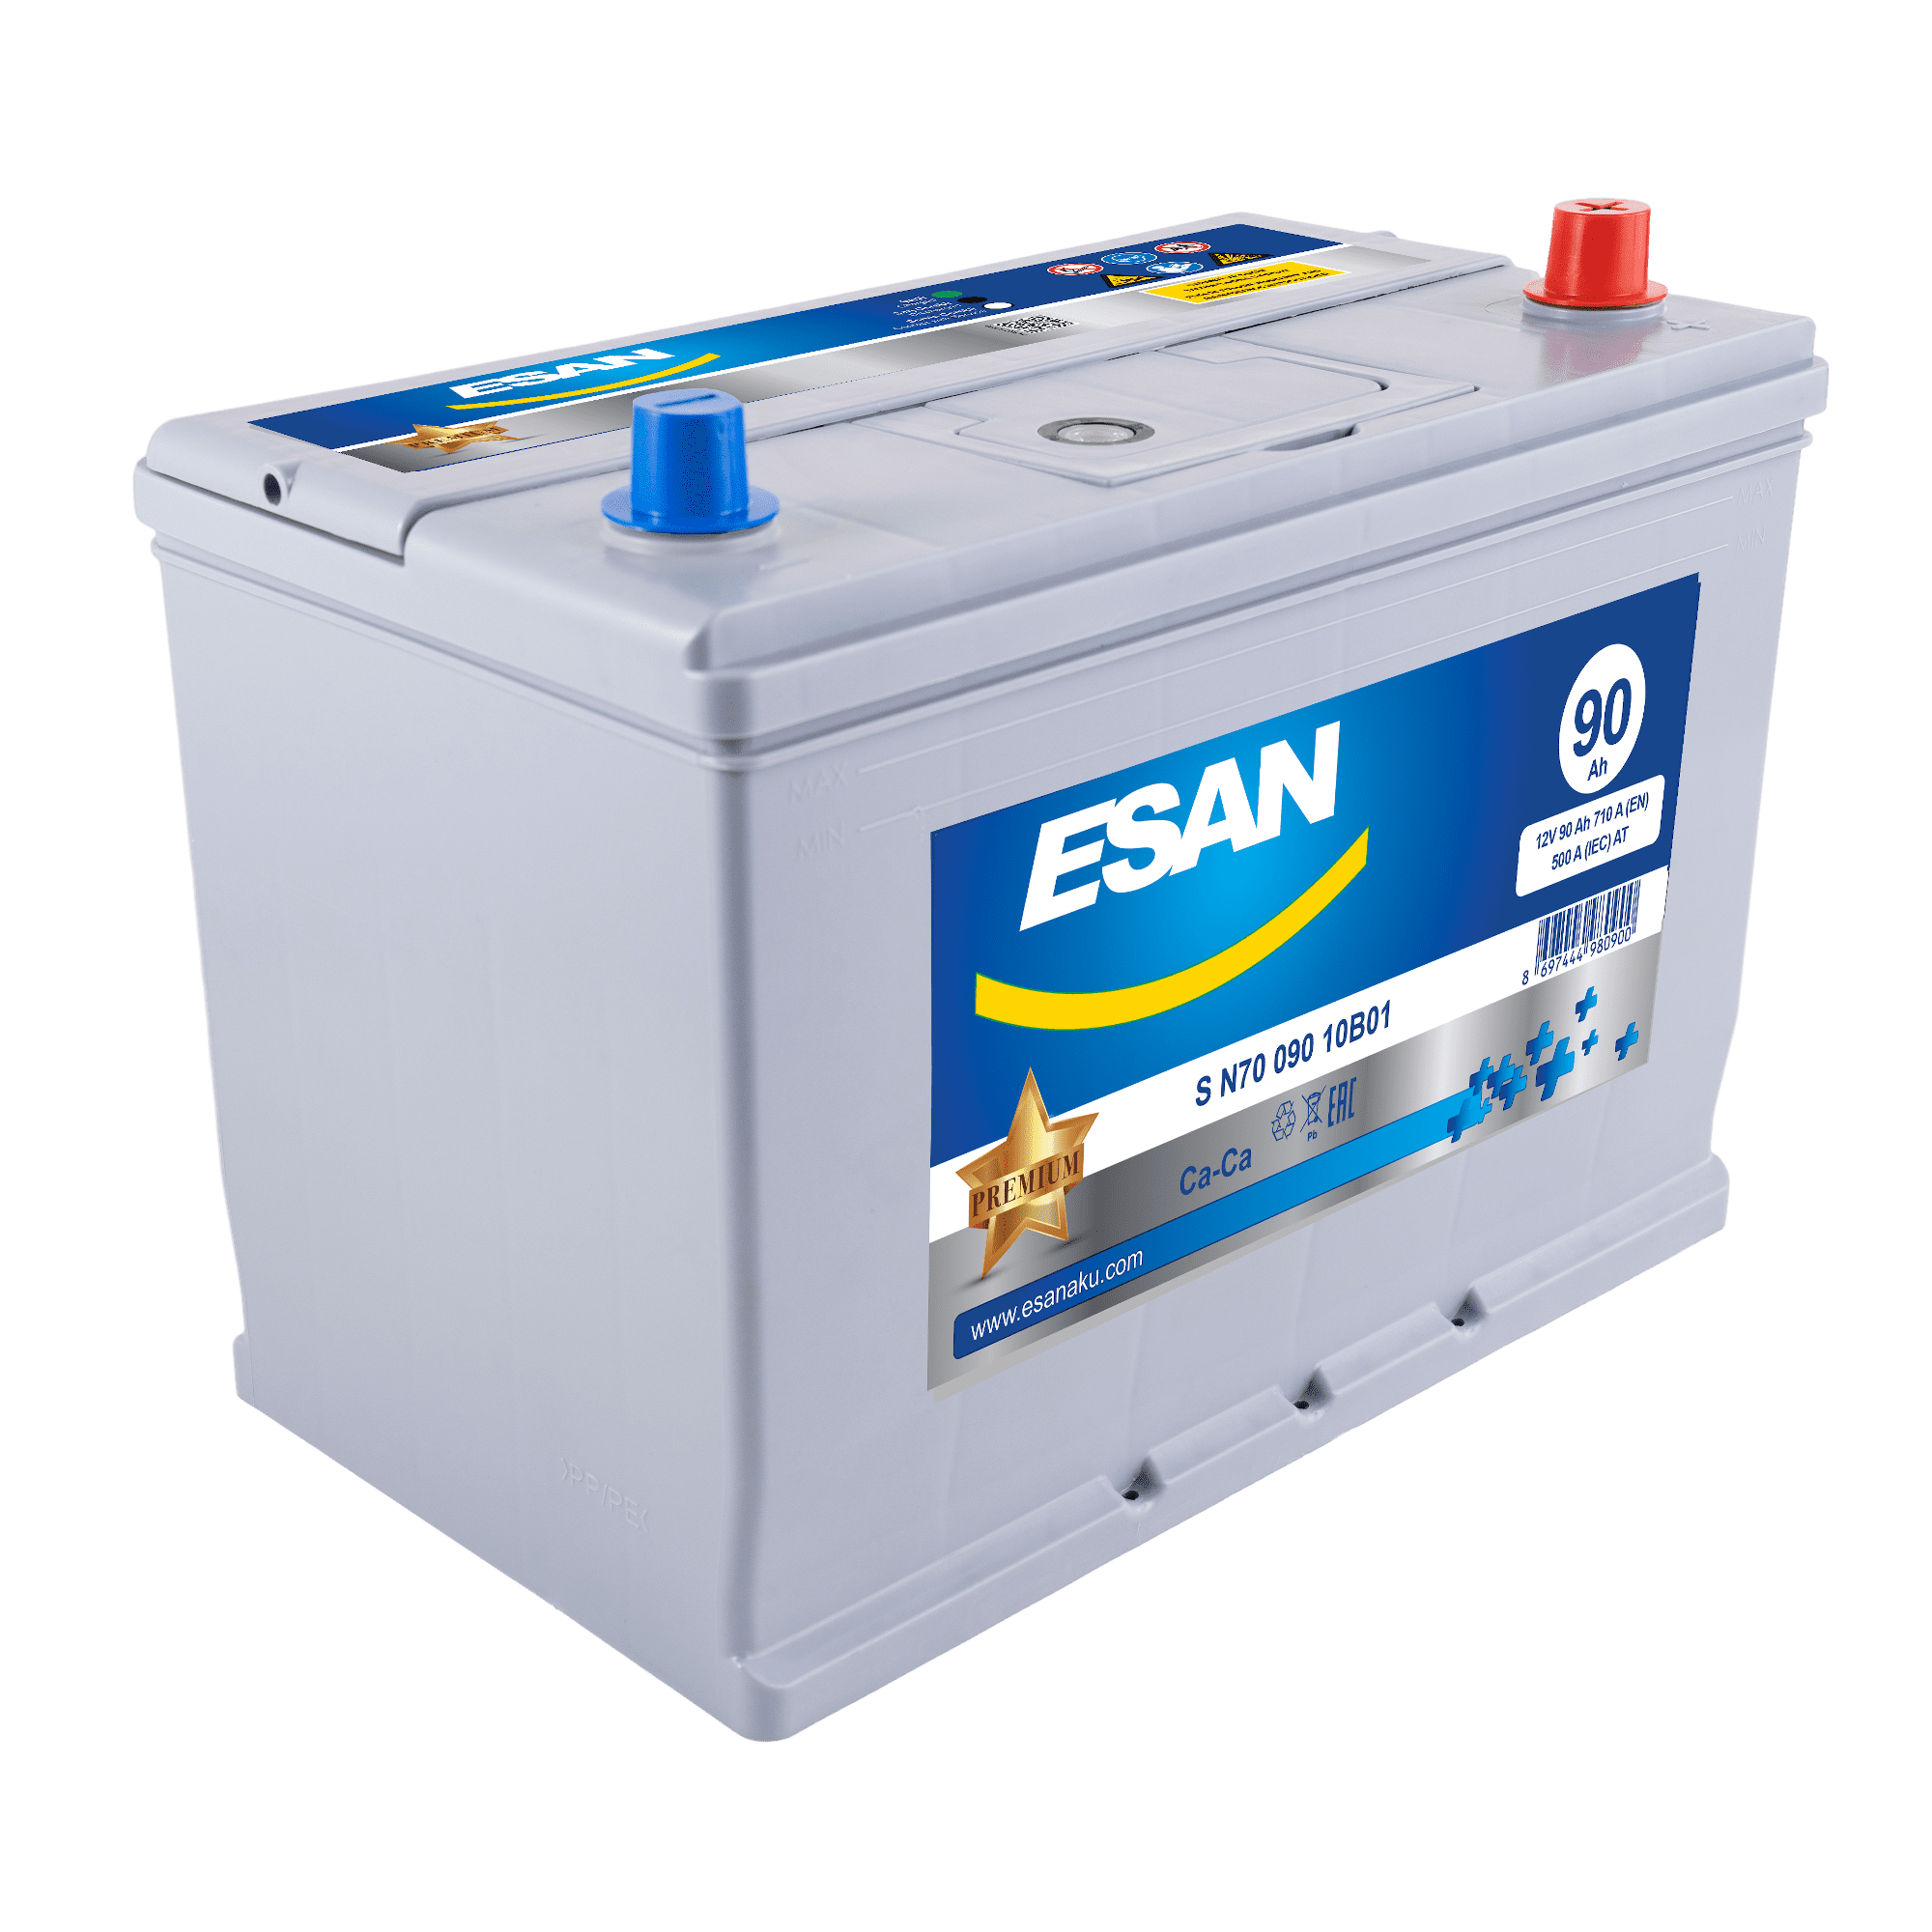 Автомобильная аккумуляторная батарея ESAN SMF S N70 090 10B01, 90 Ач, N70 JIS, 0/1